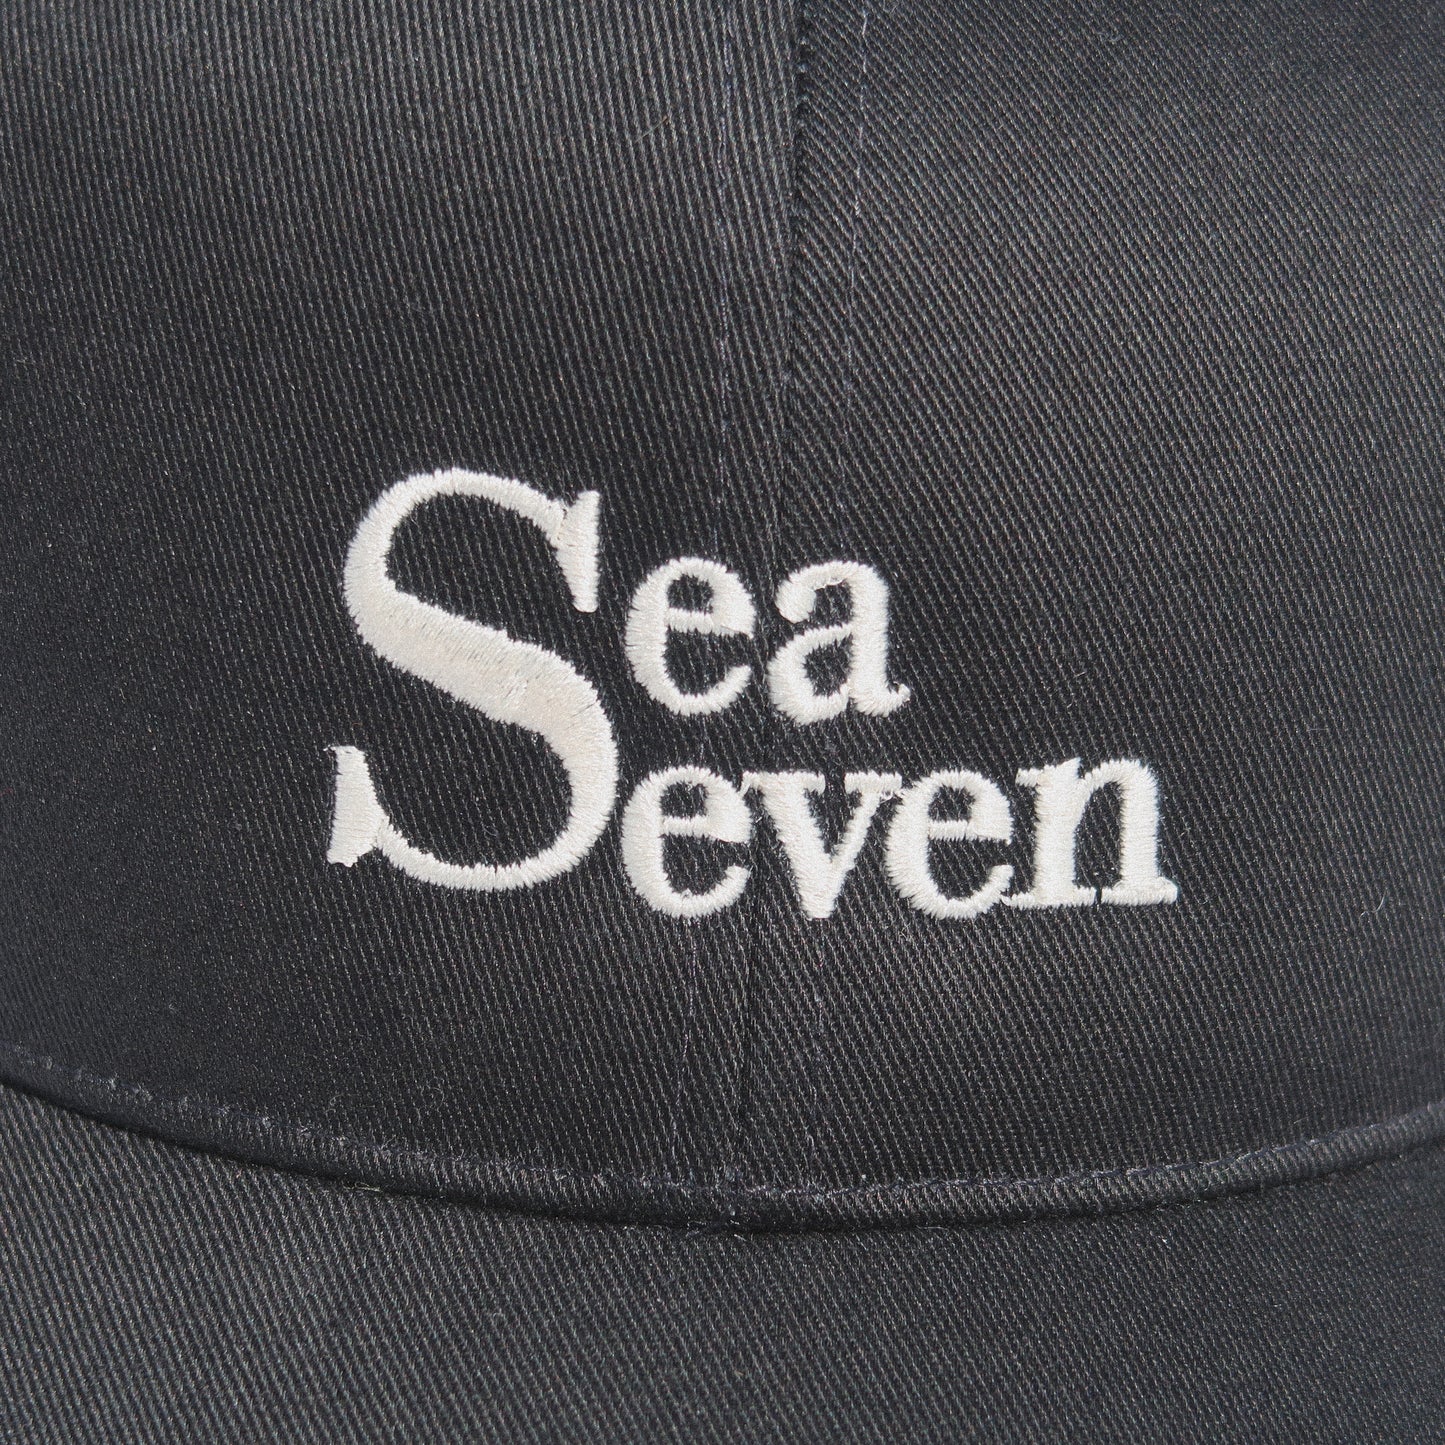 SEA SEVEN HATS